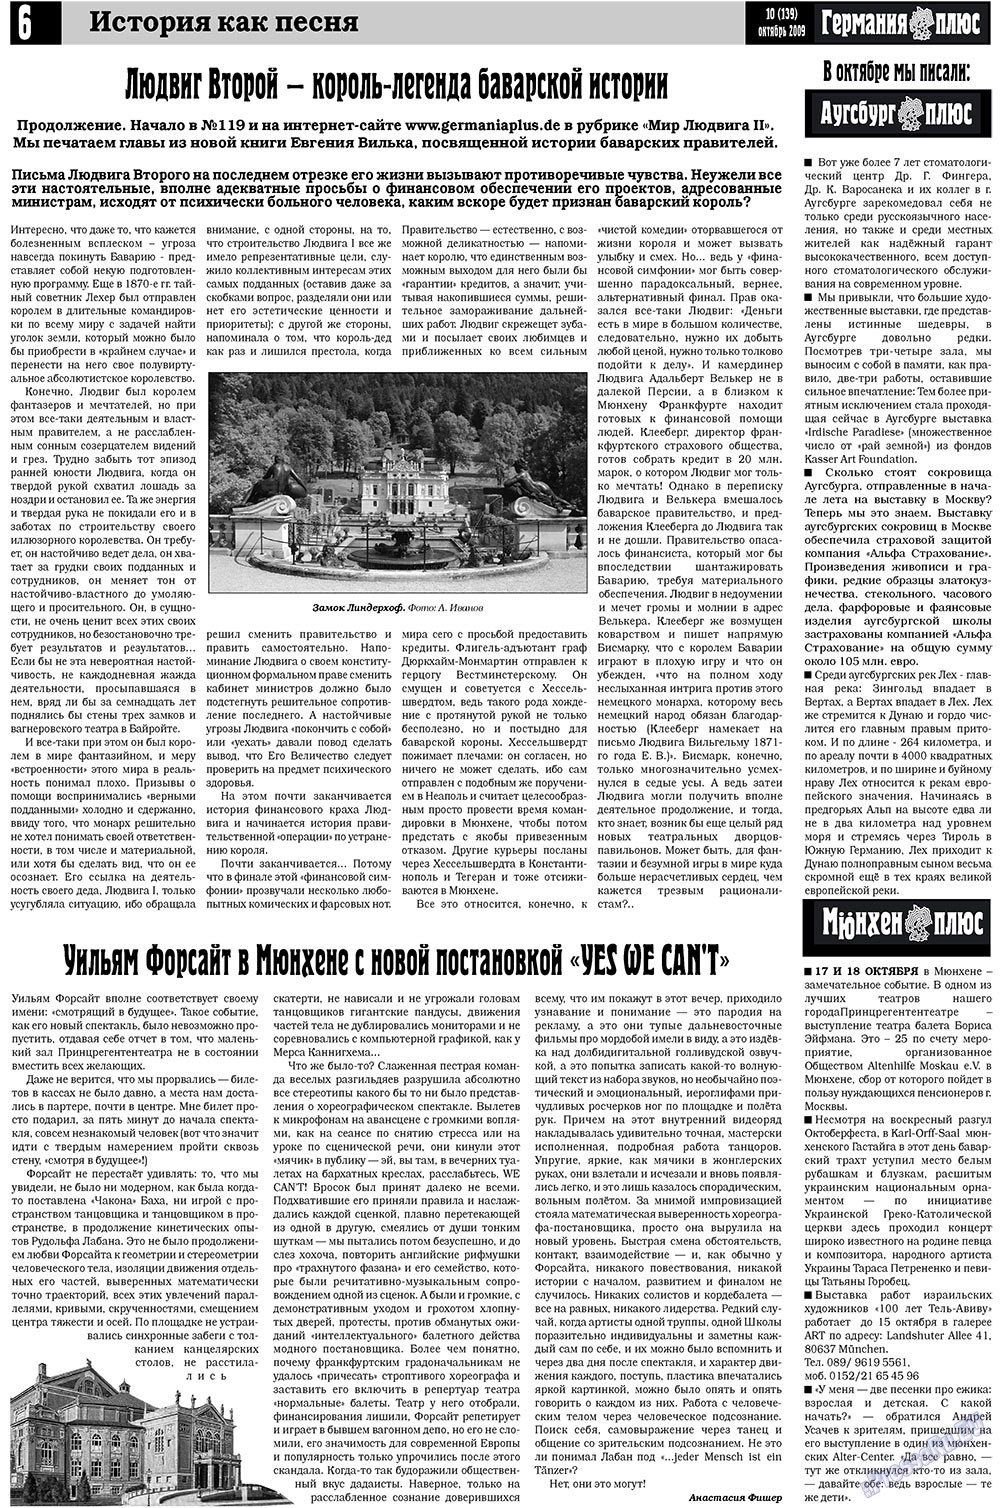 Германия плюс, газета. 2009 №10 стр.6